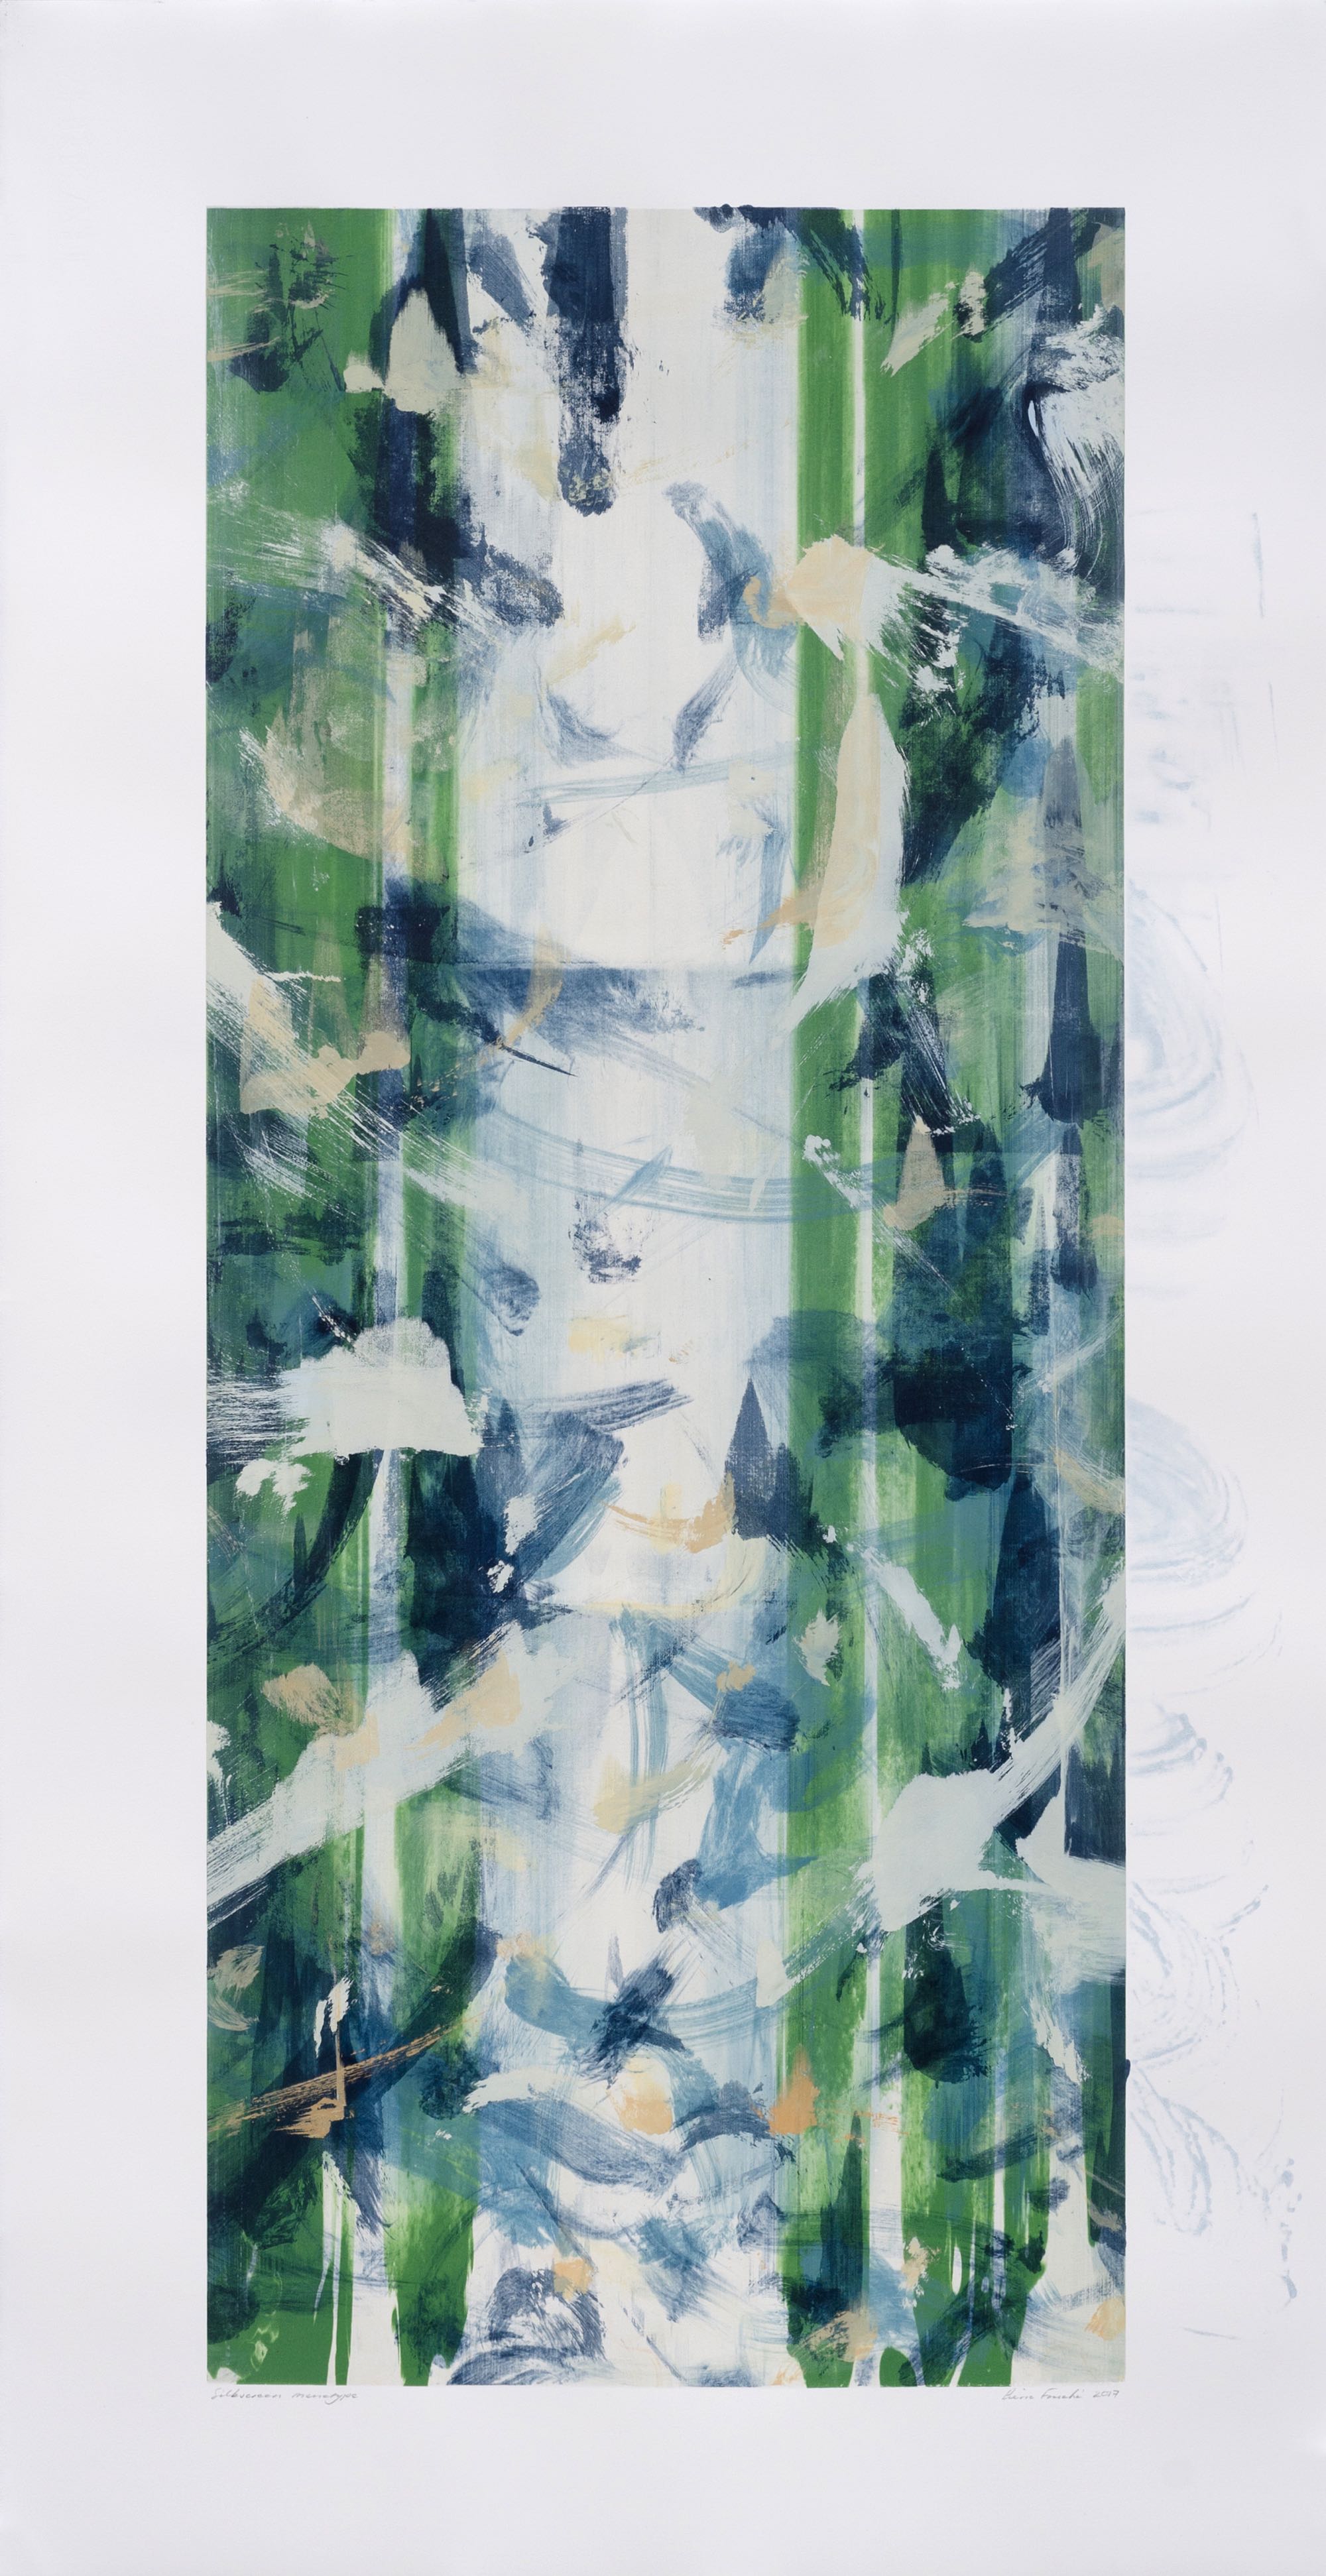 Pierre Fouché. Boekrol VI. Silkscreen monotype on Zerkall Litho paper. 90 x 37.5 cm 